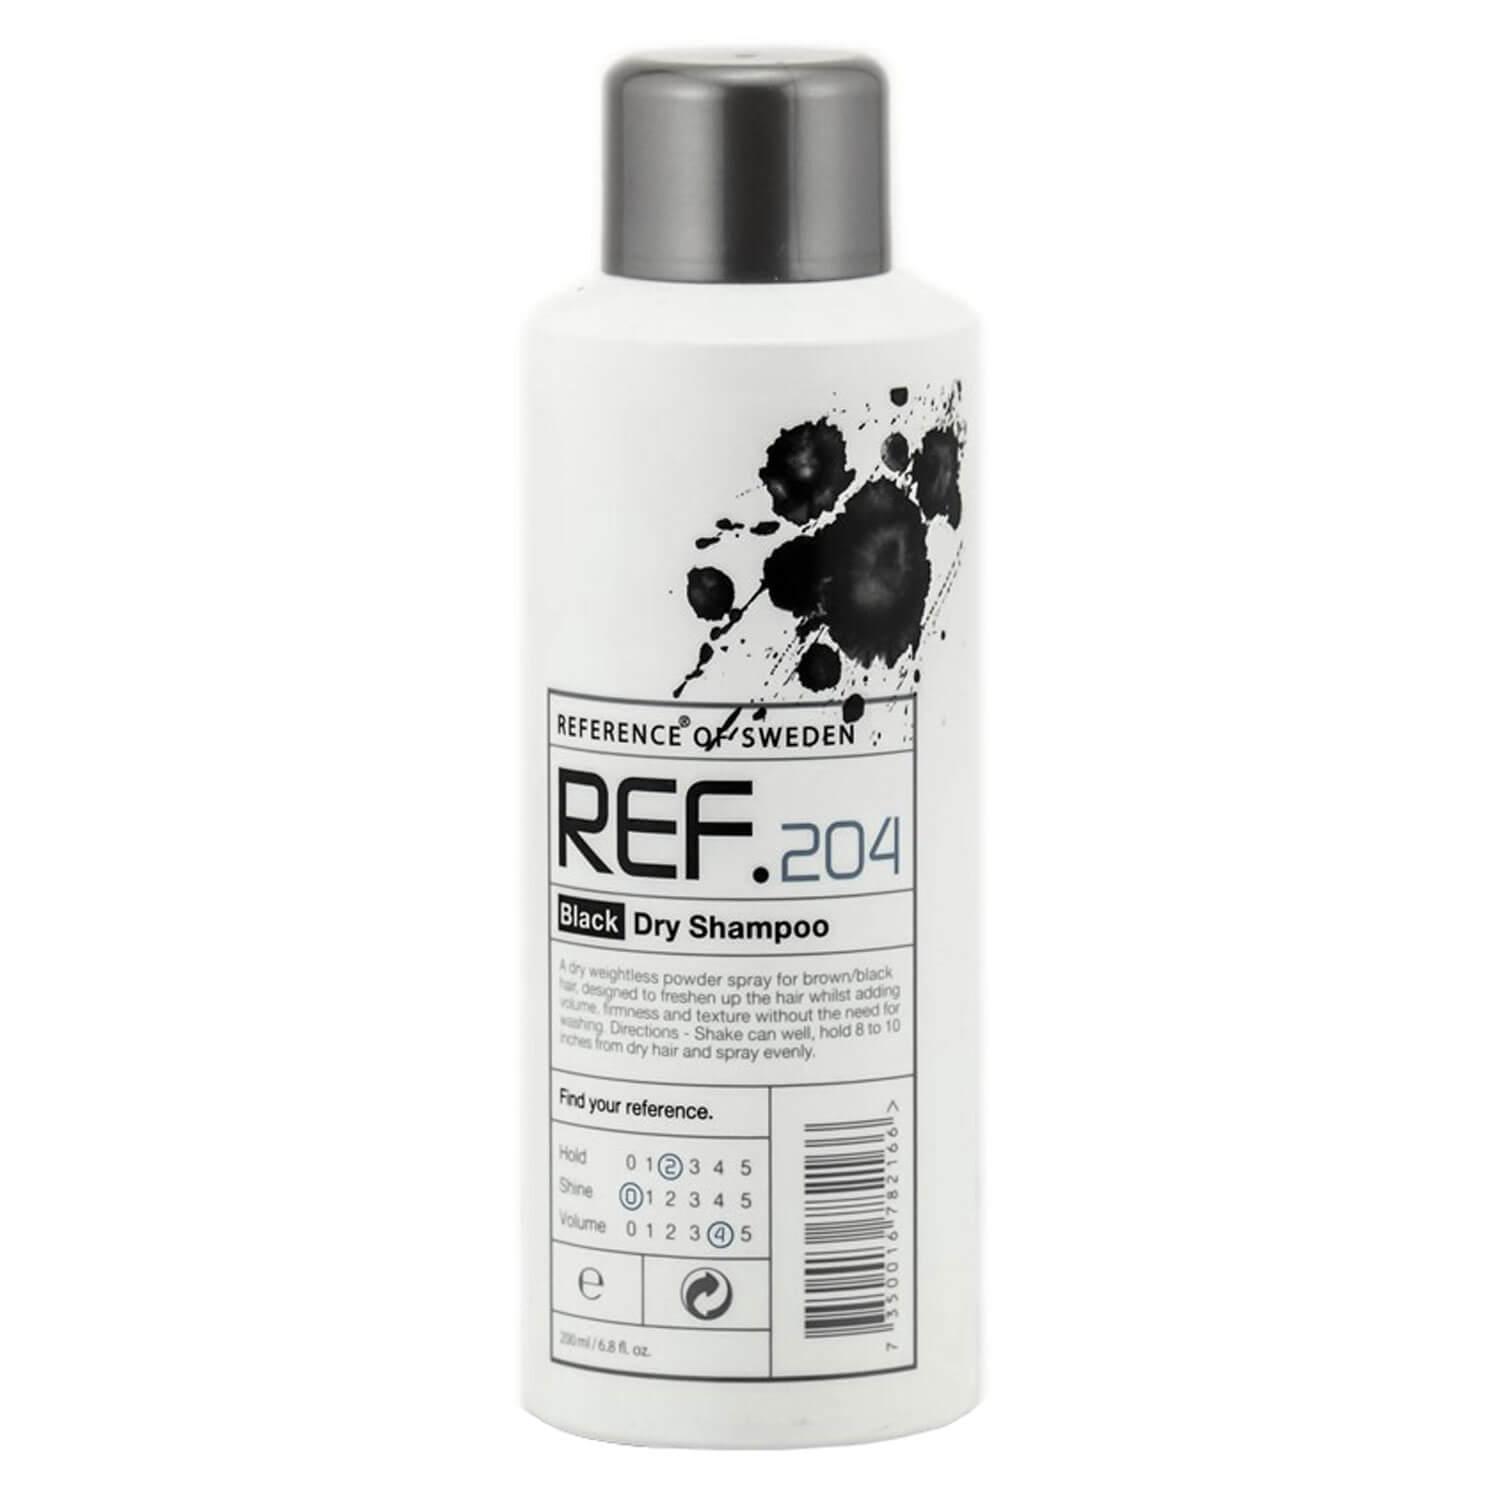 REF Shampoo - Black Dry Shampoo 204